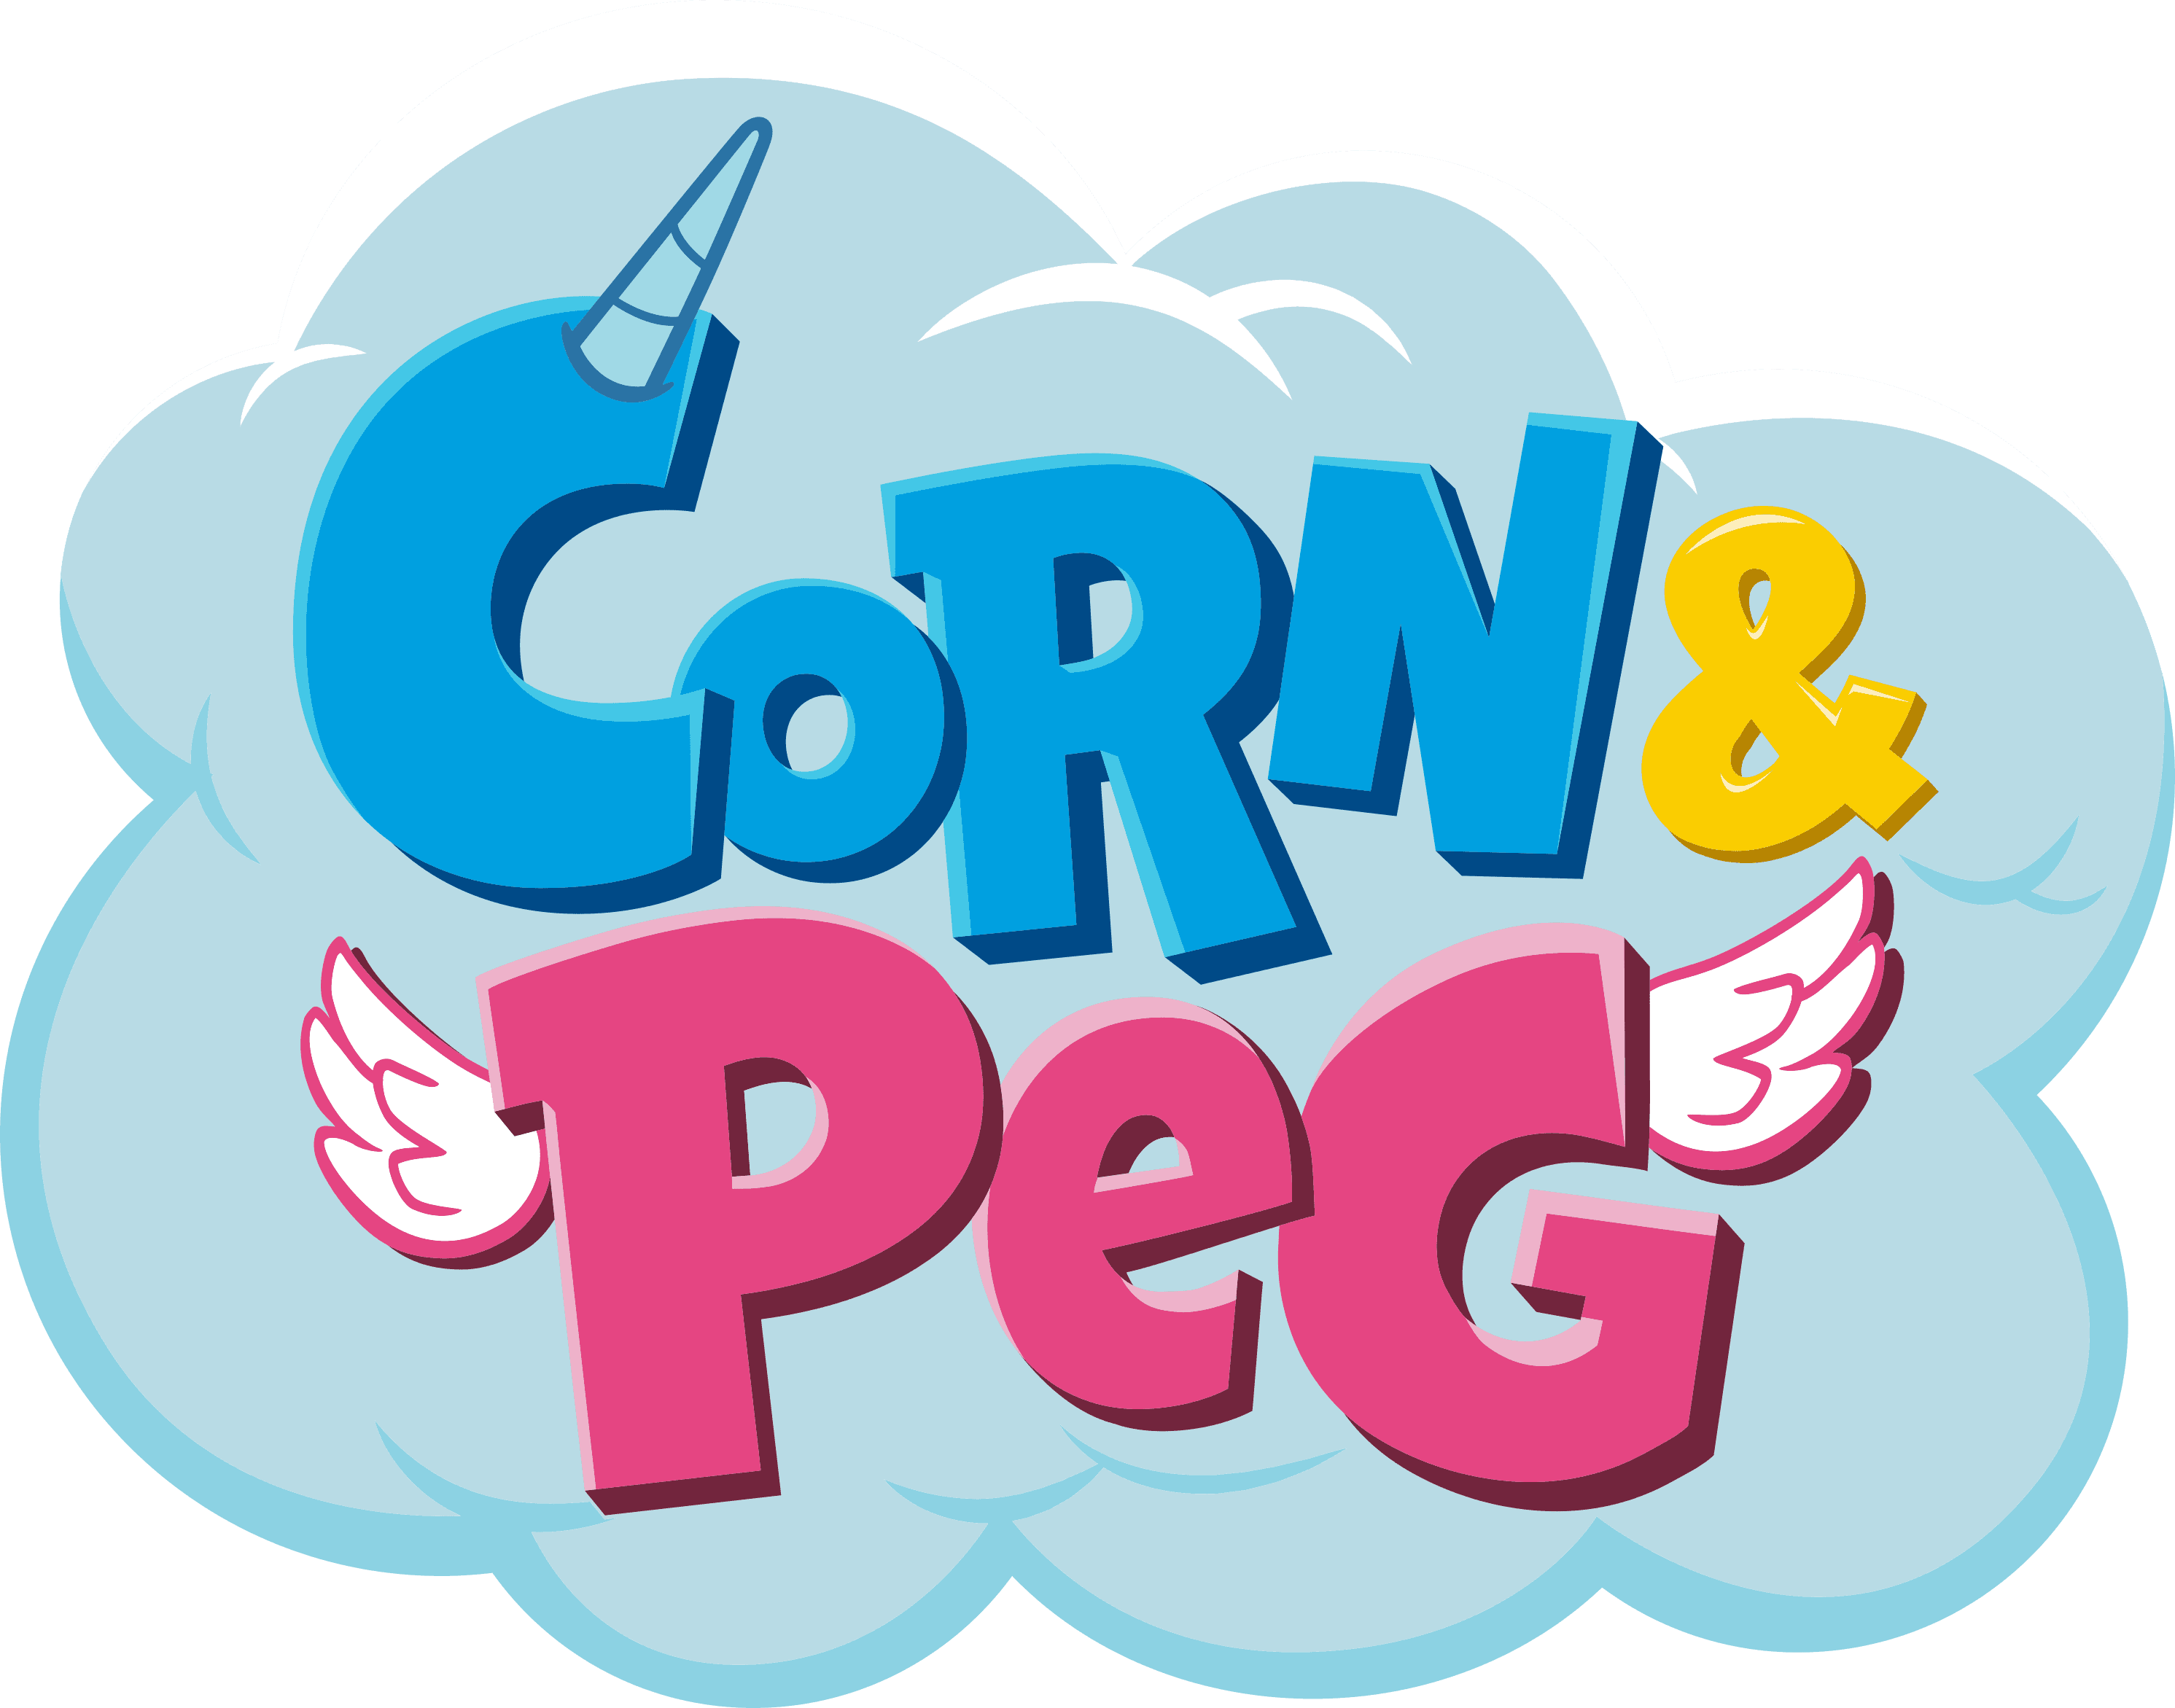 Corn & Peg logo